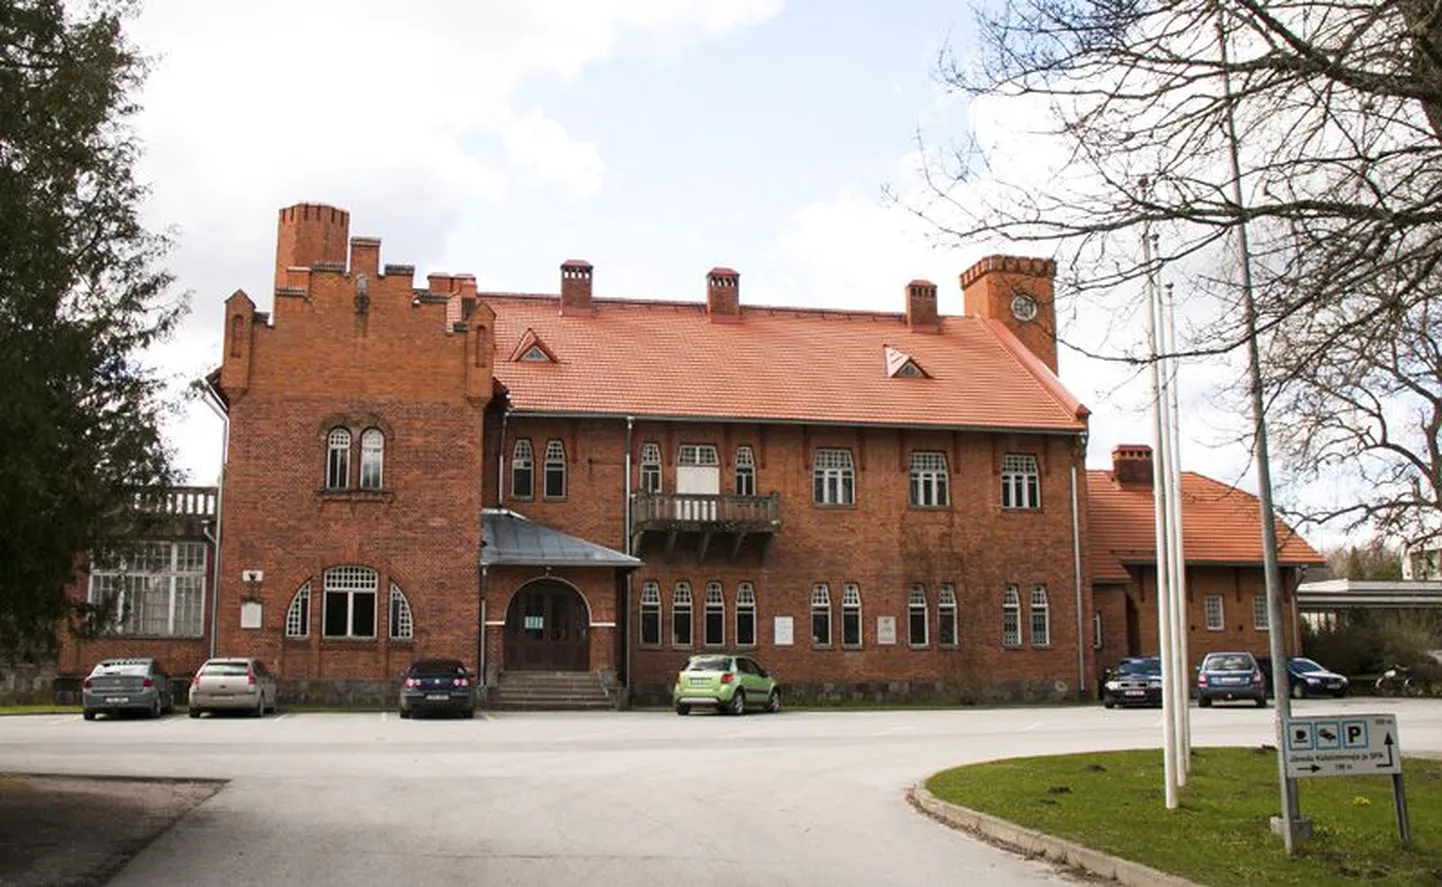 Jäneda mõisa lossilaadne peahoone on kohaliku rahva jaoks oluline arhitektuurimälestis ja kooskäimiskoht.